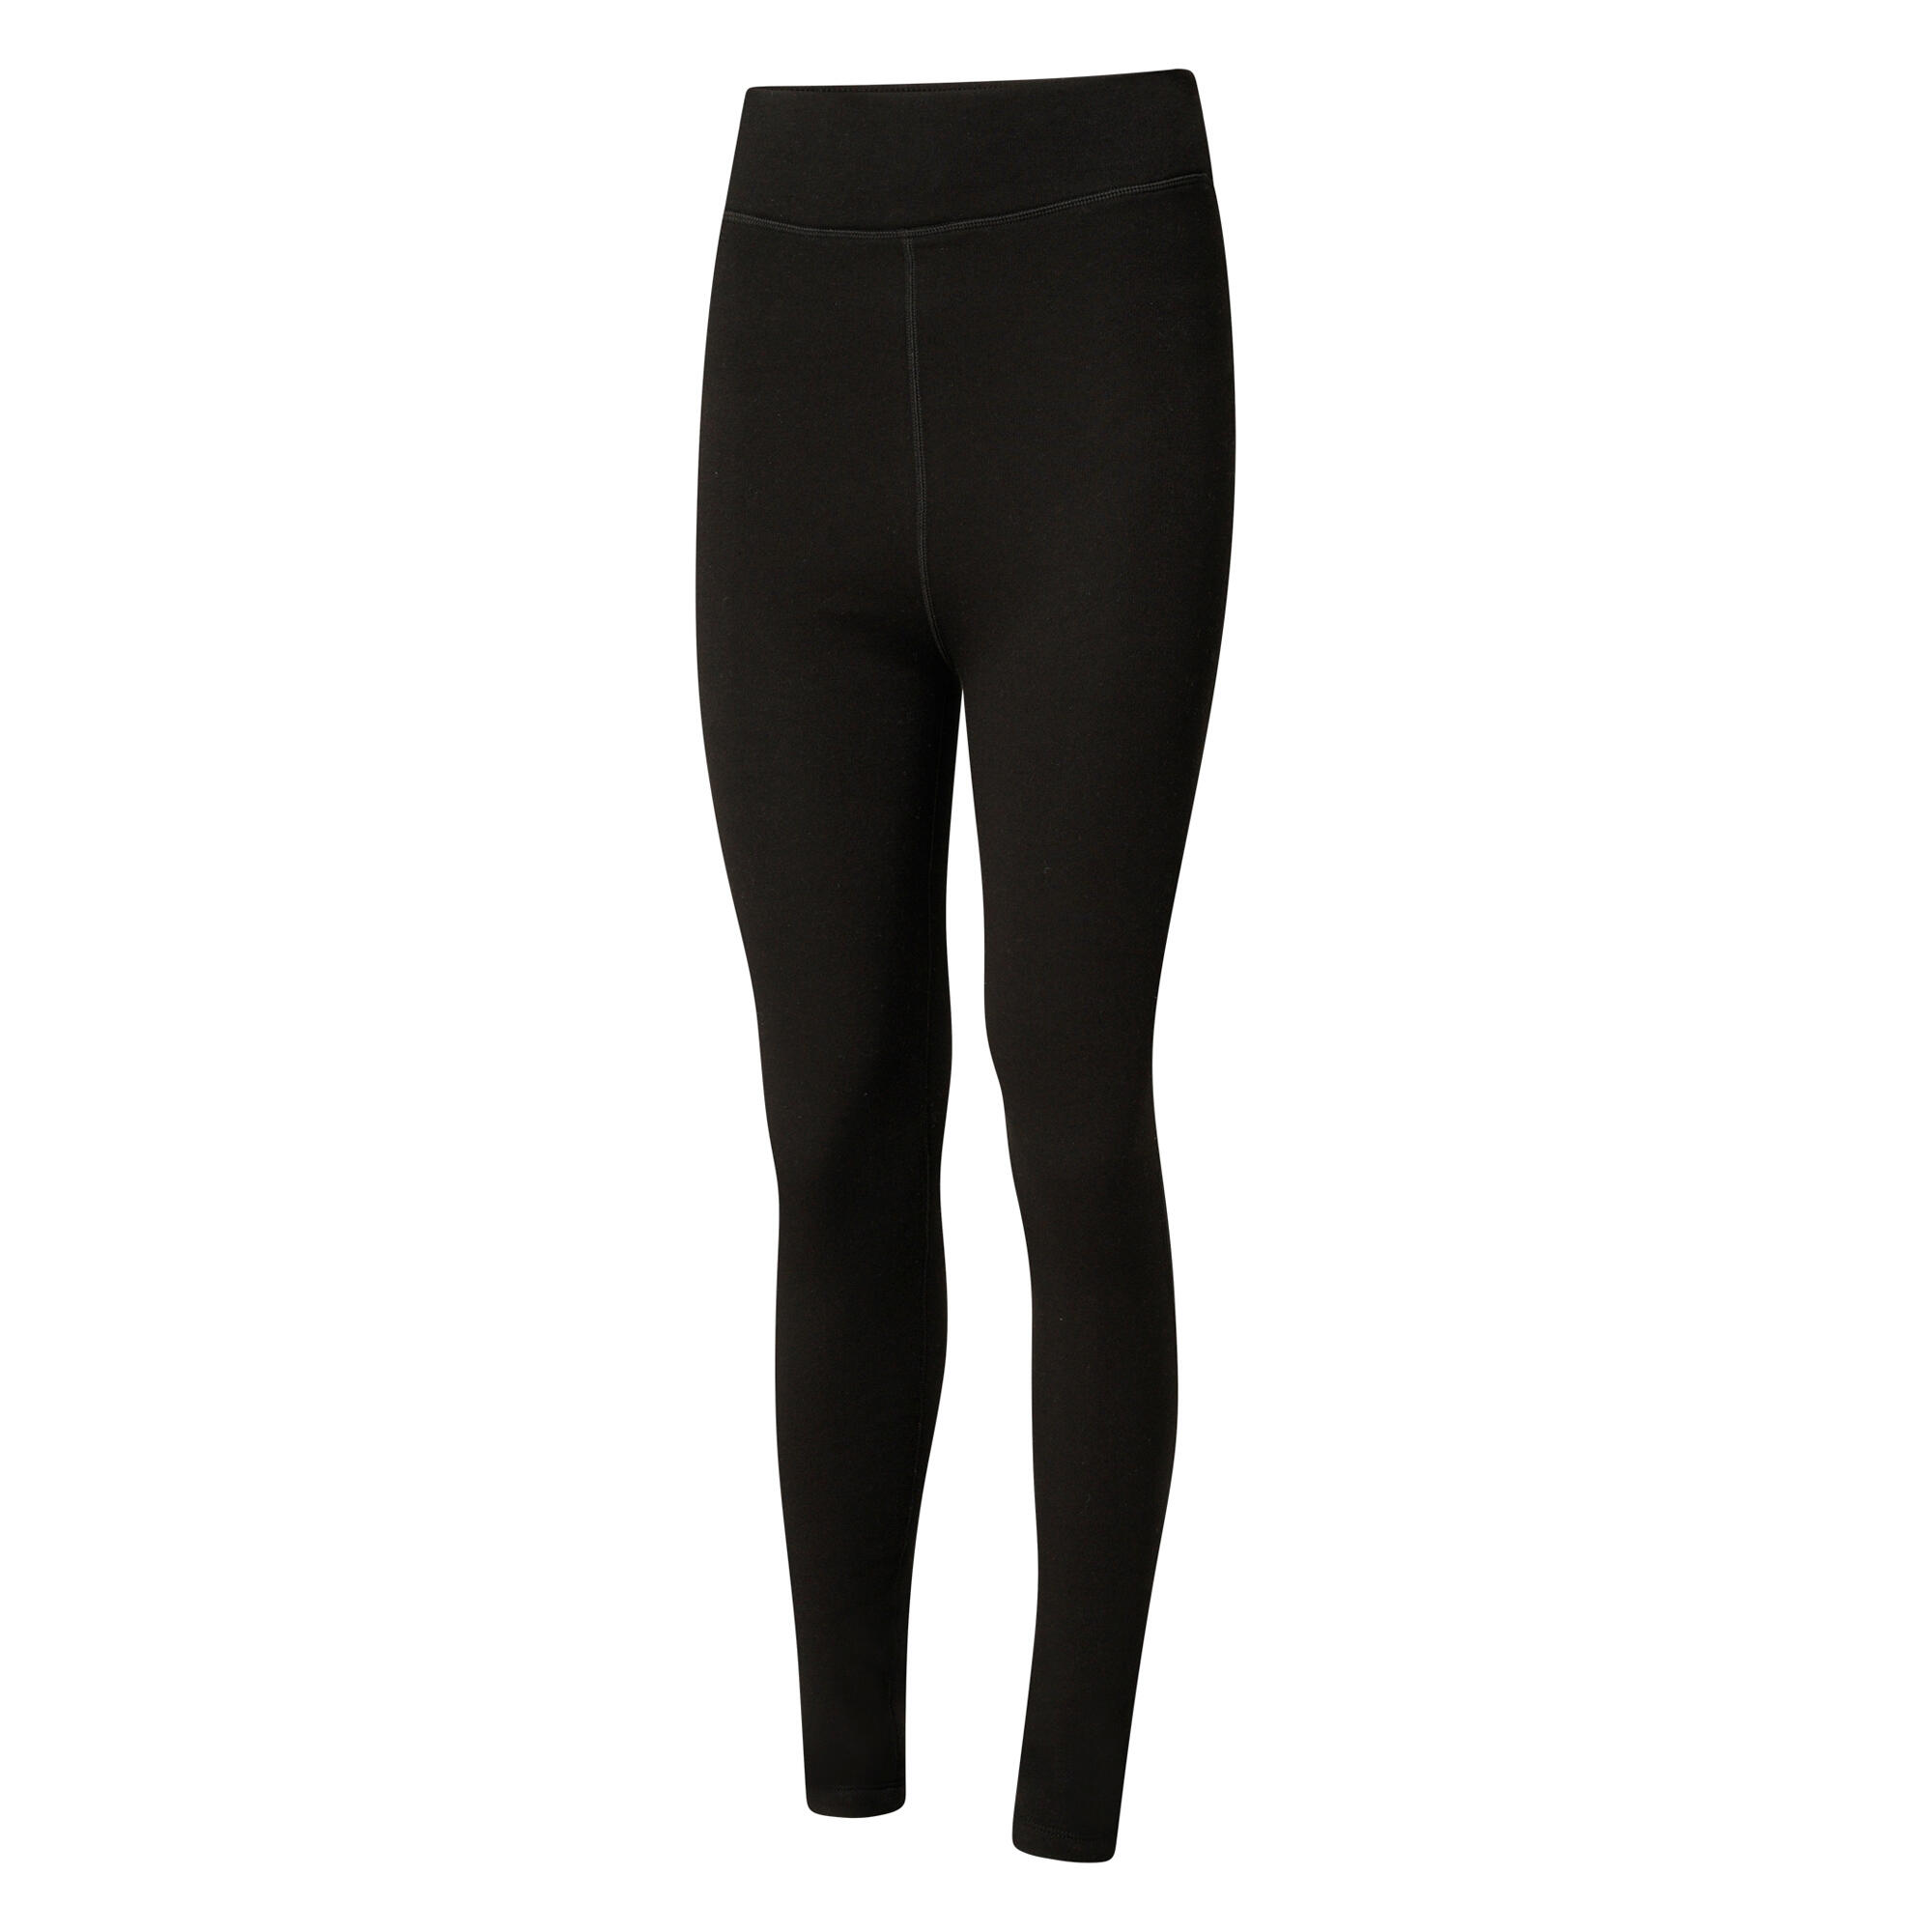 Womens/Ladies Sleek Fleece Leggings (Black) 3/4